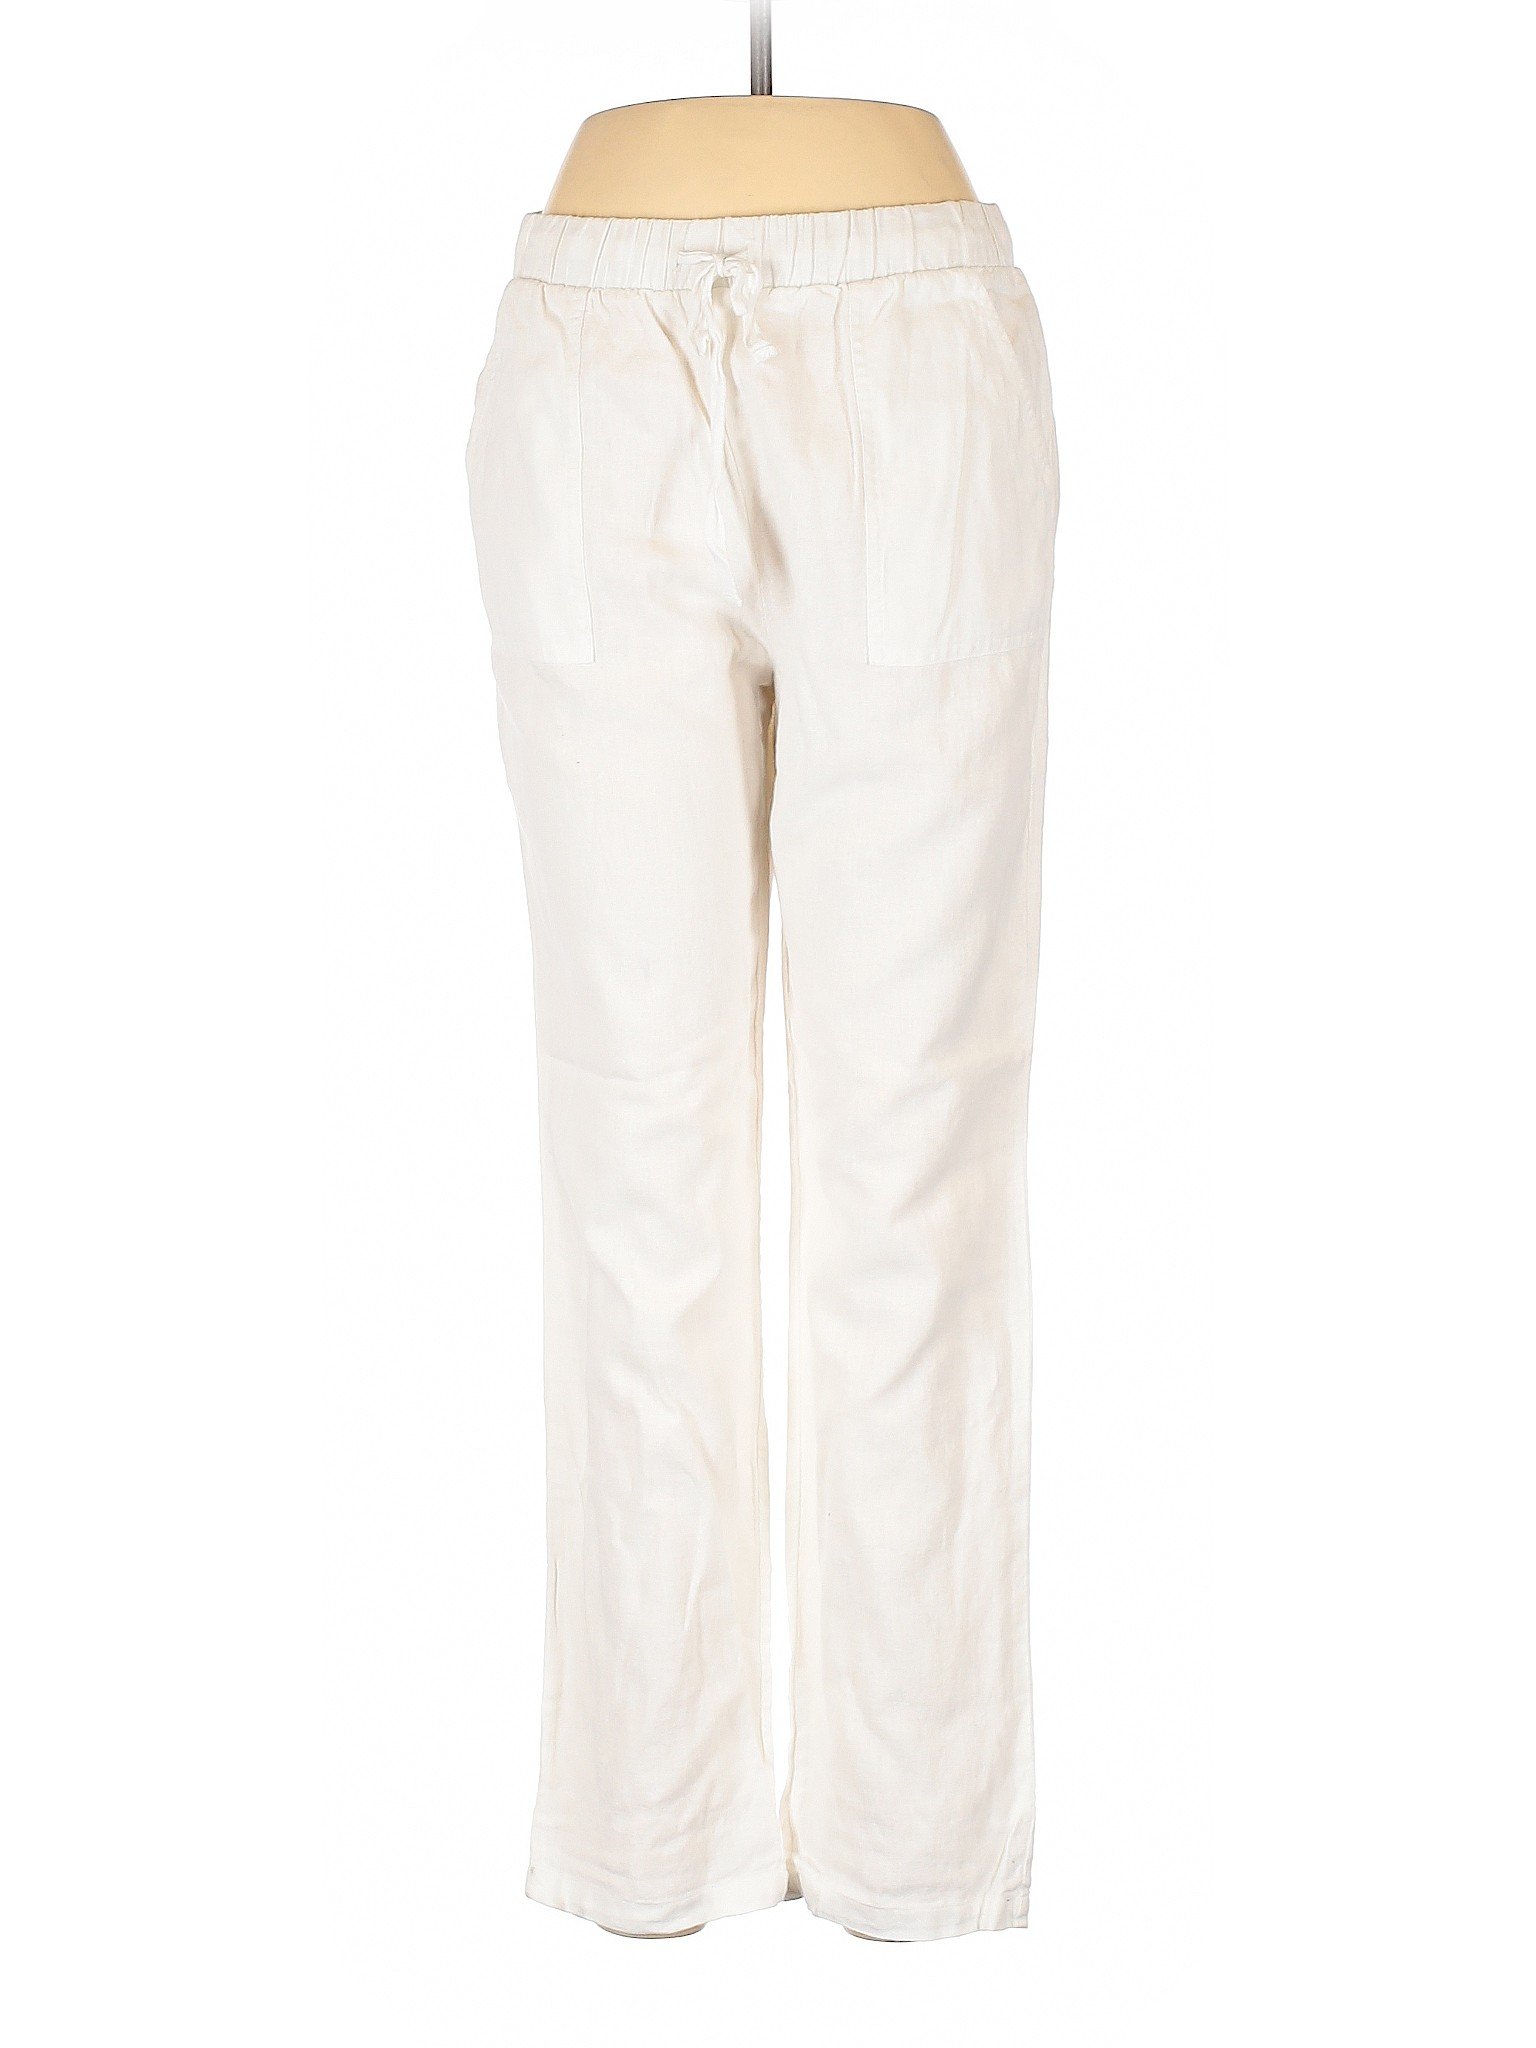 Emerson Grace Women White Linen Pants M | eBay